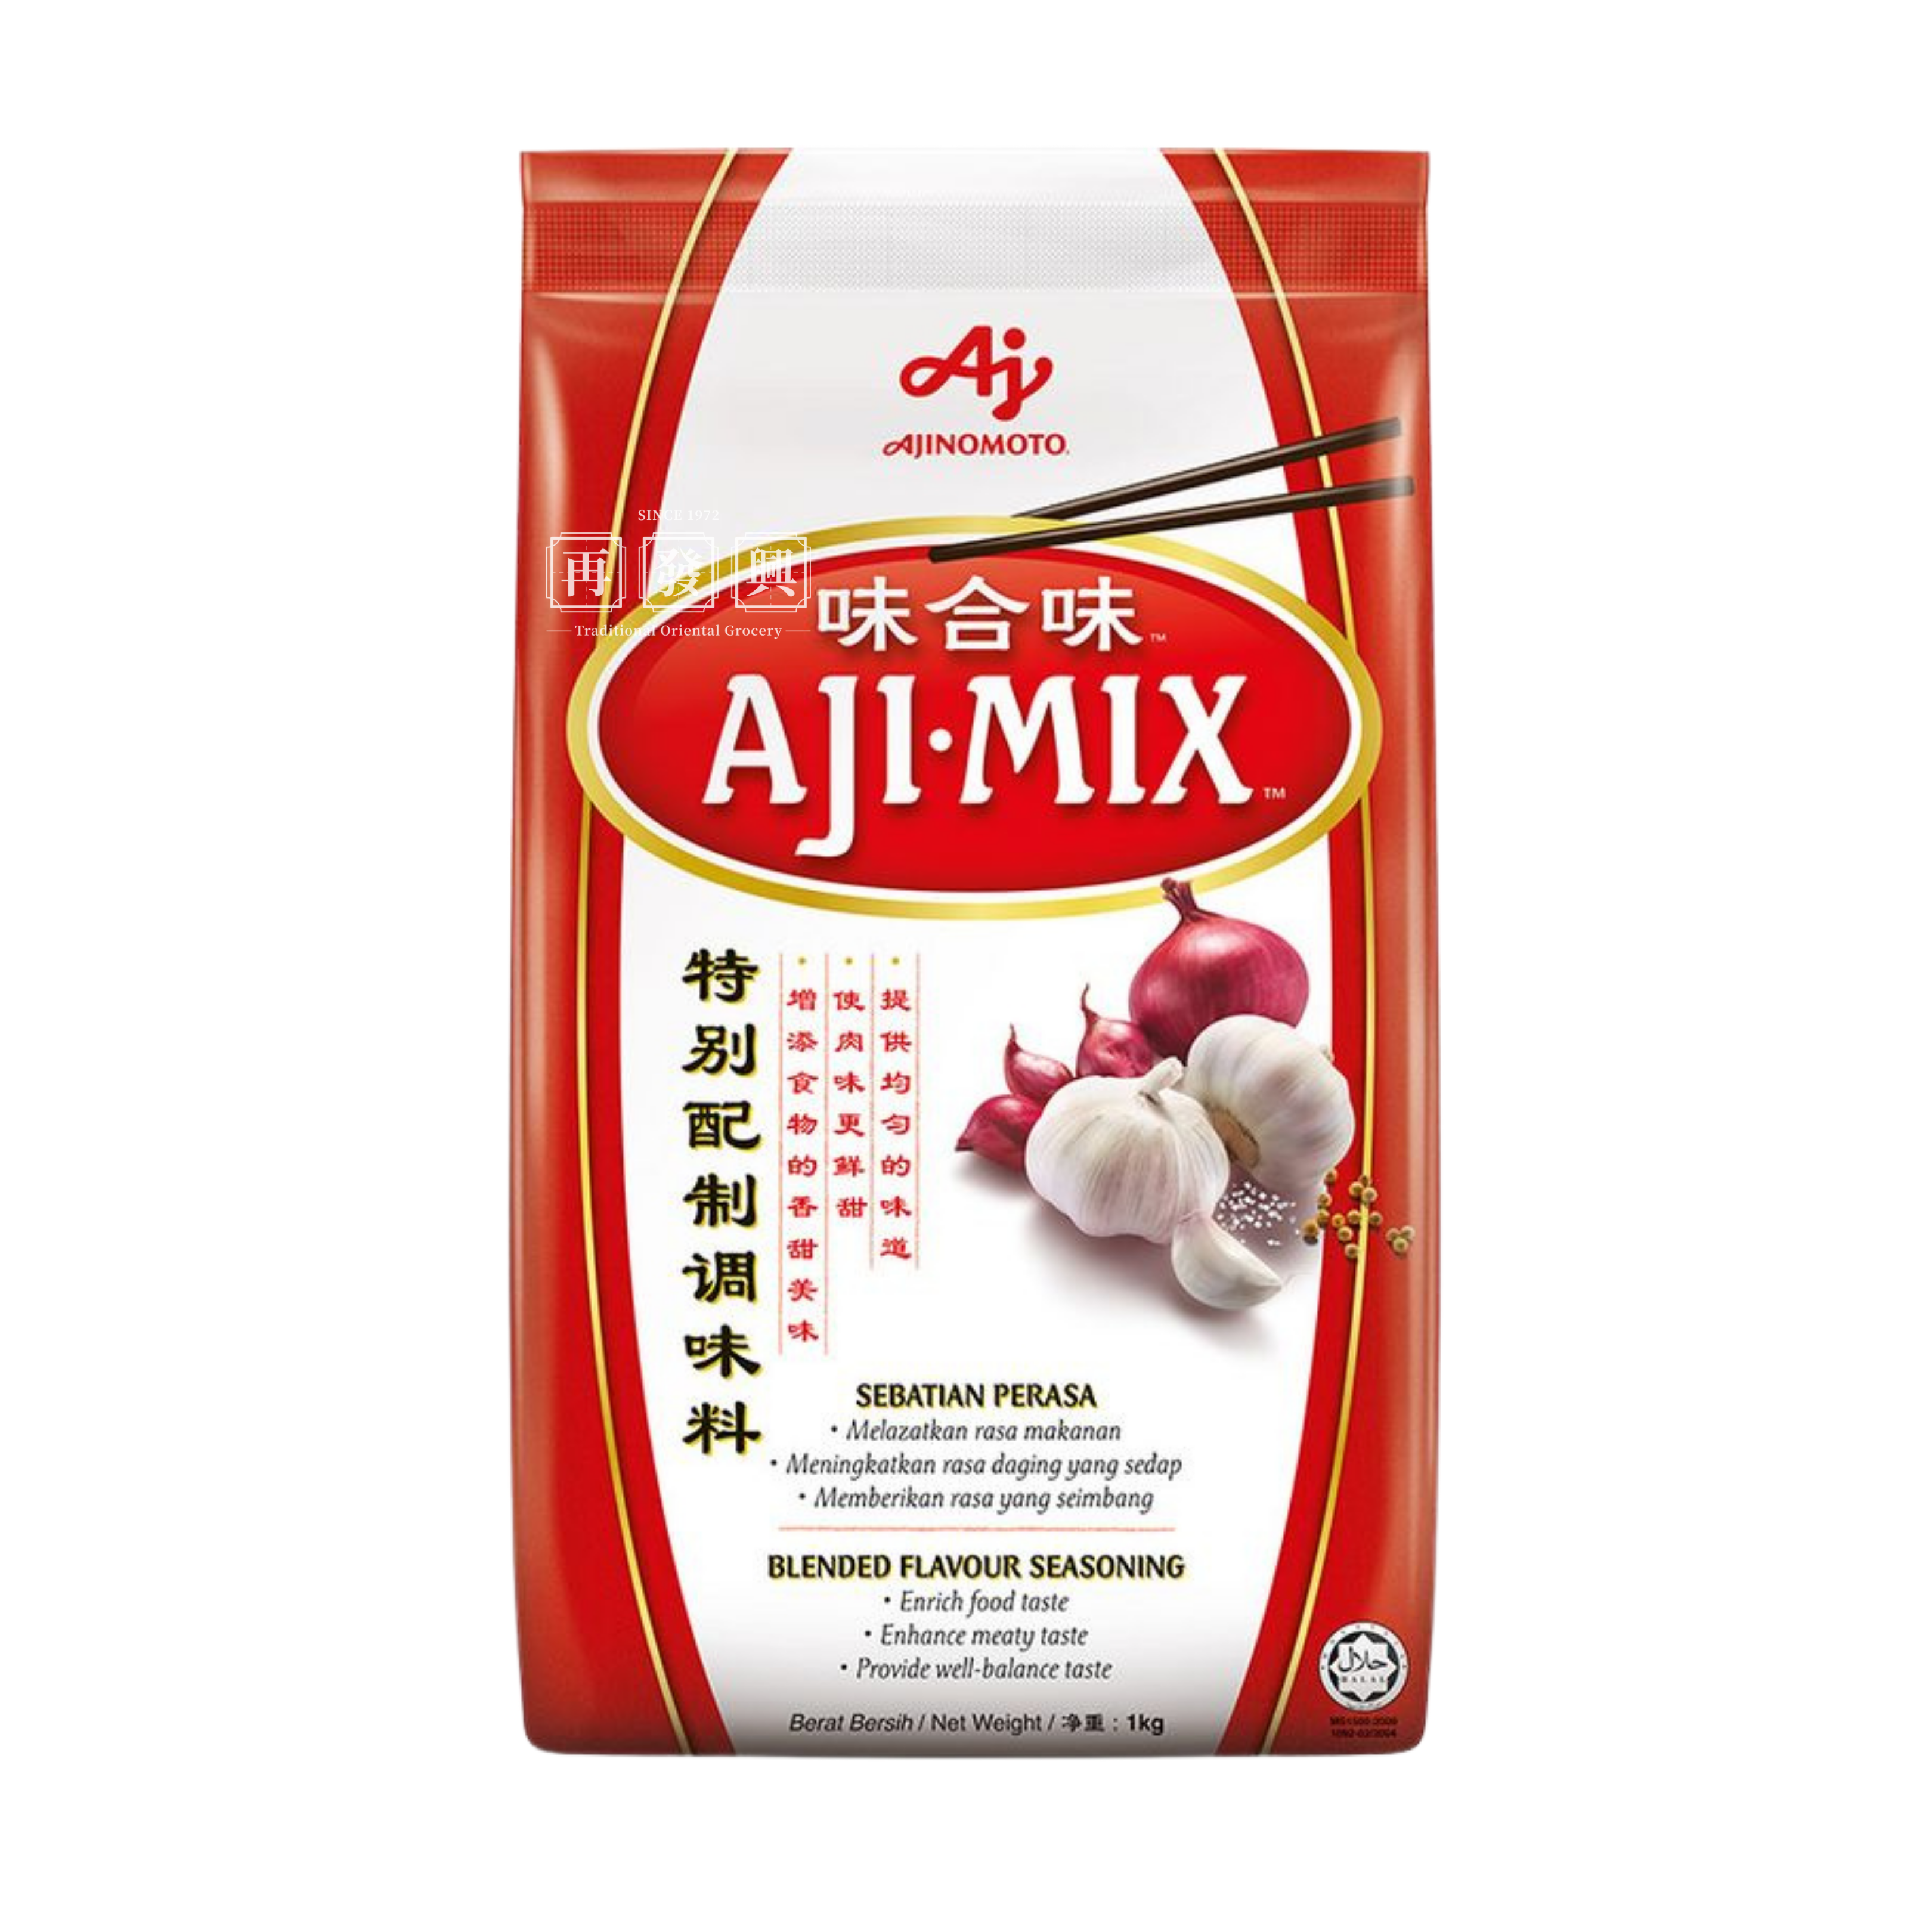 Ajinomoto Aji-Mix 味合味 1kg